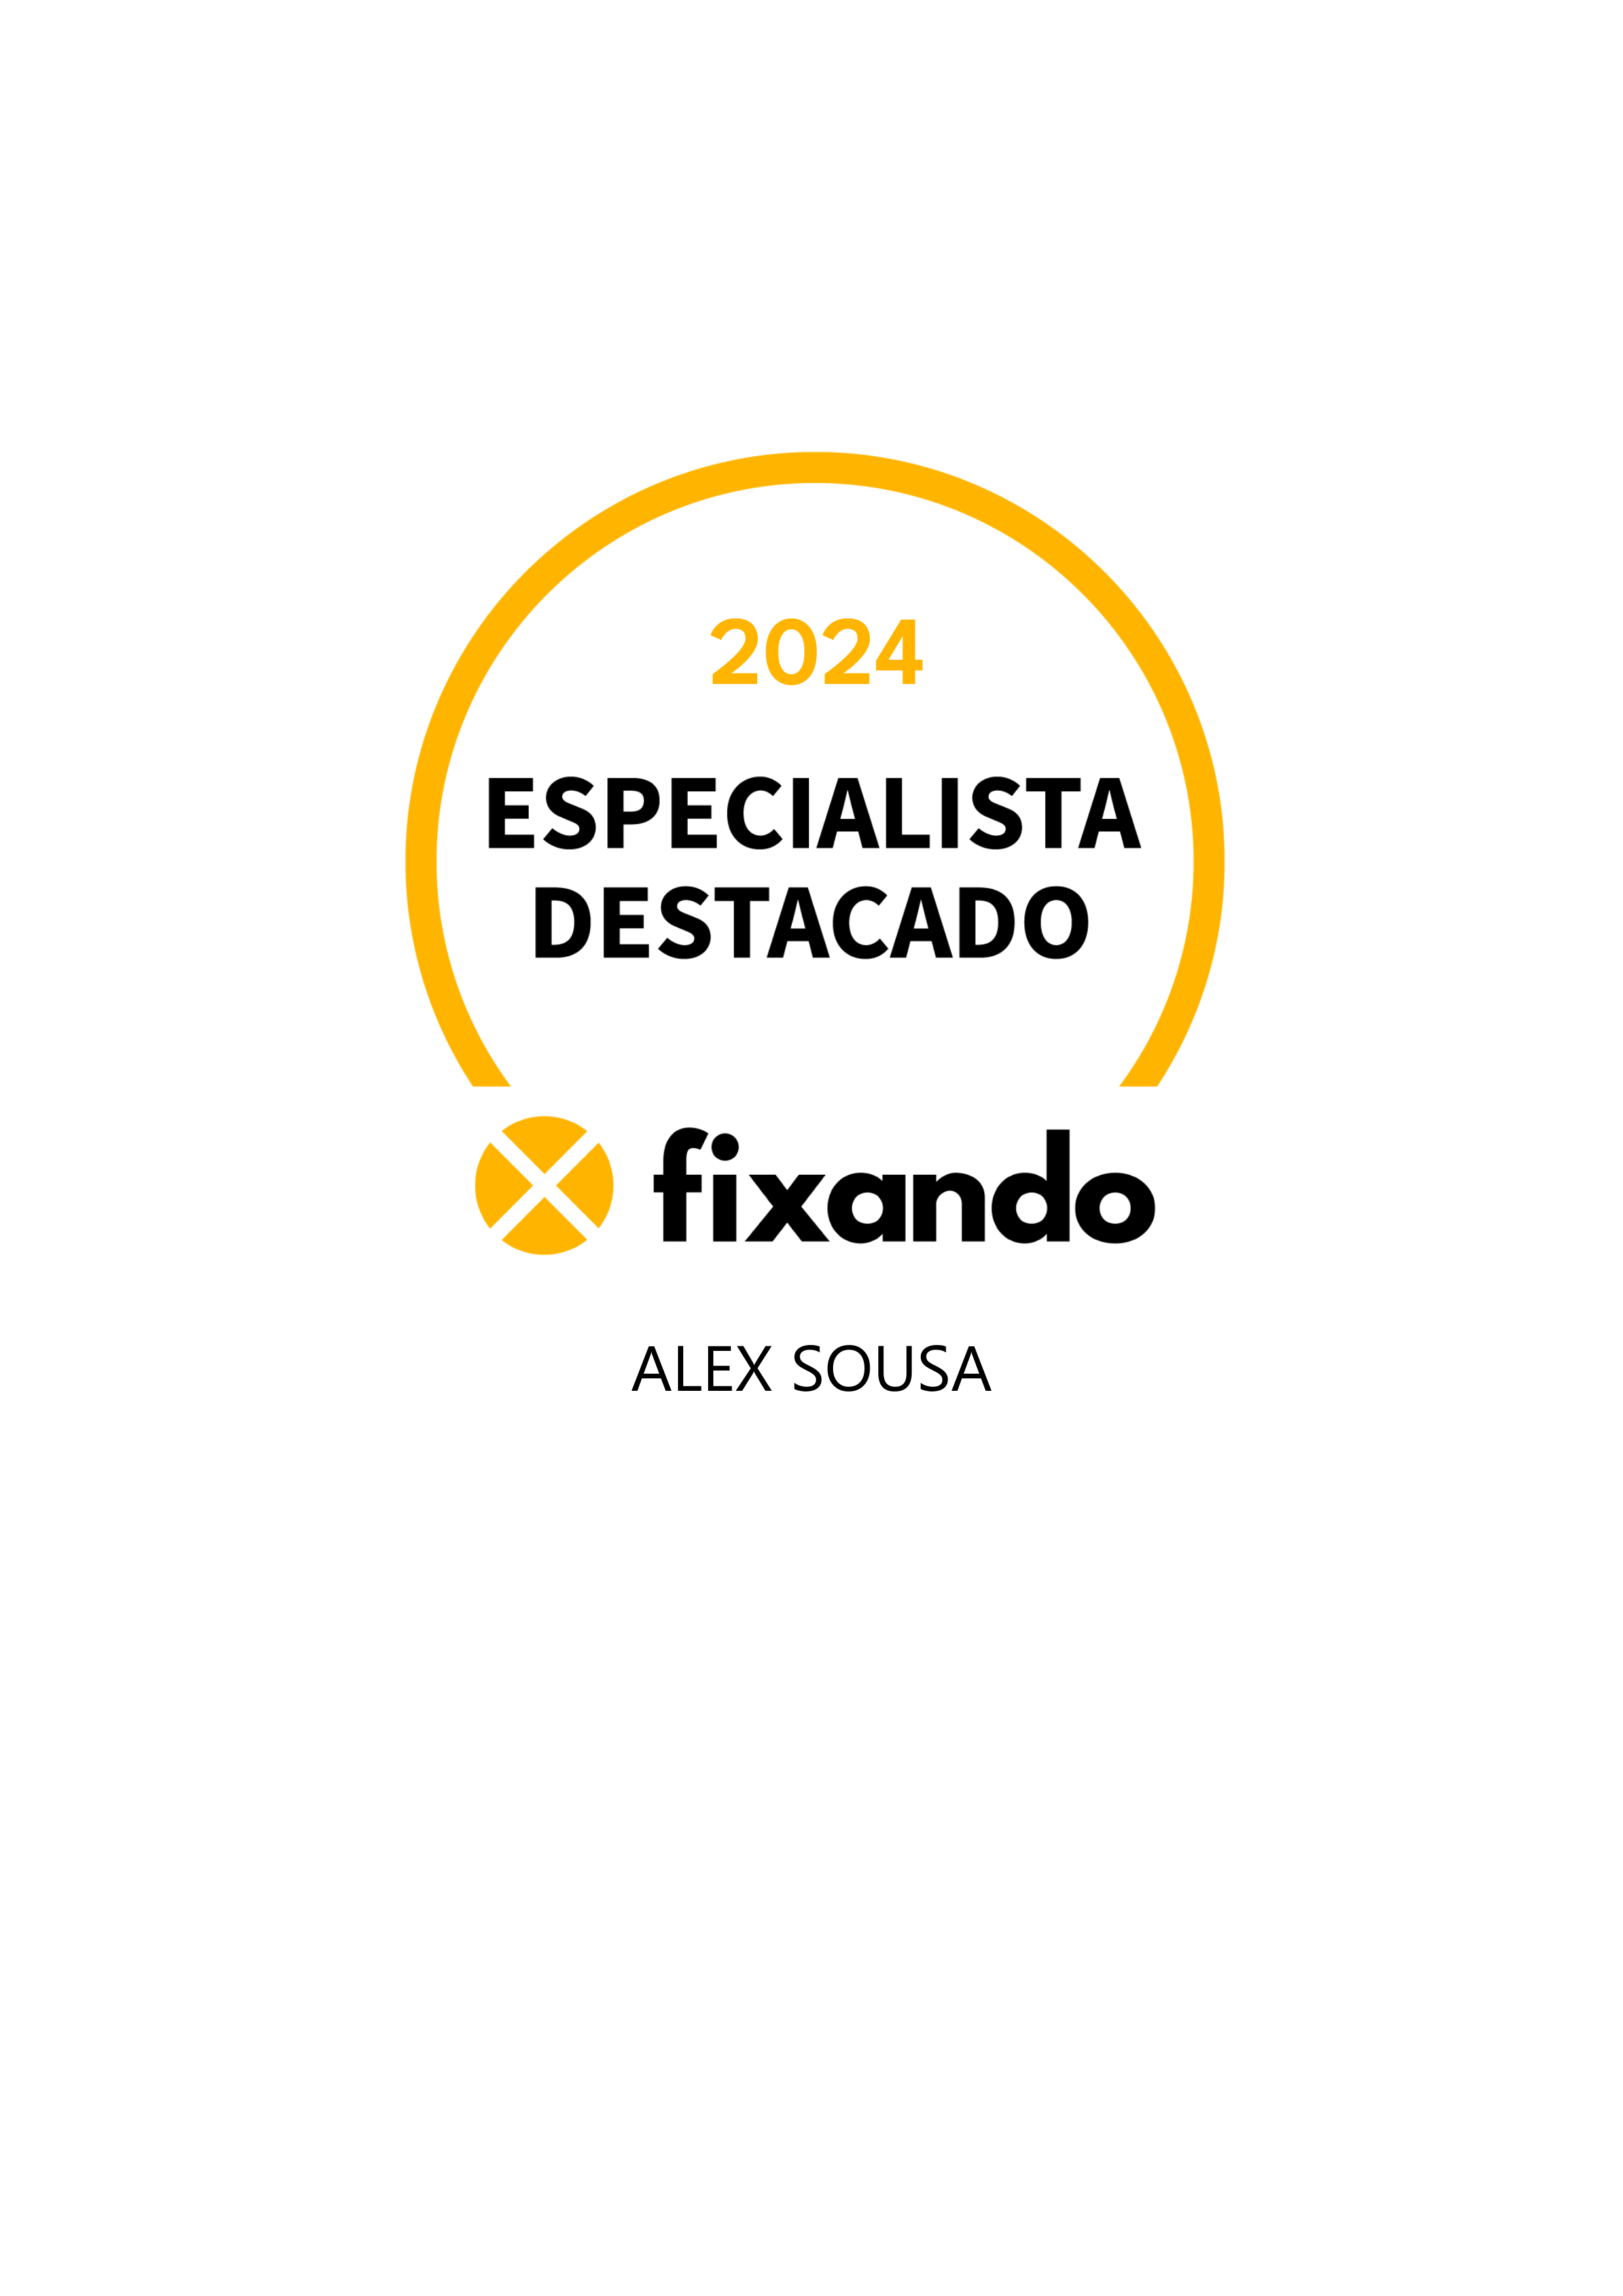 Alex sousa - Porto de Mós - Reparação ou Manutenção de Canalização Exterior